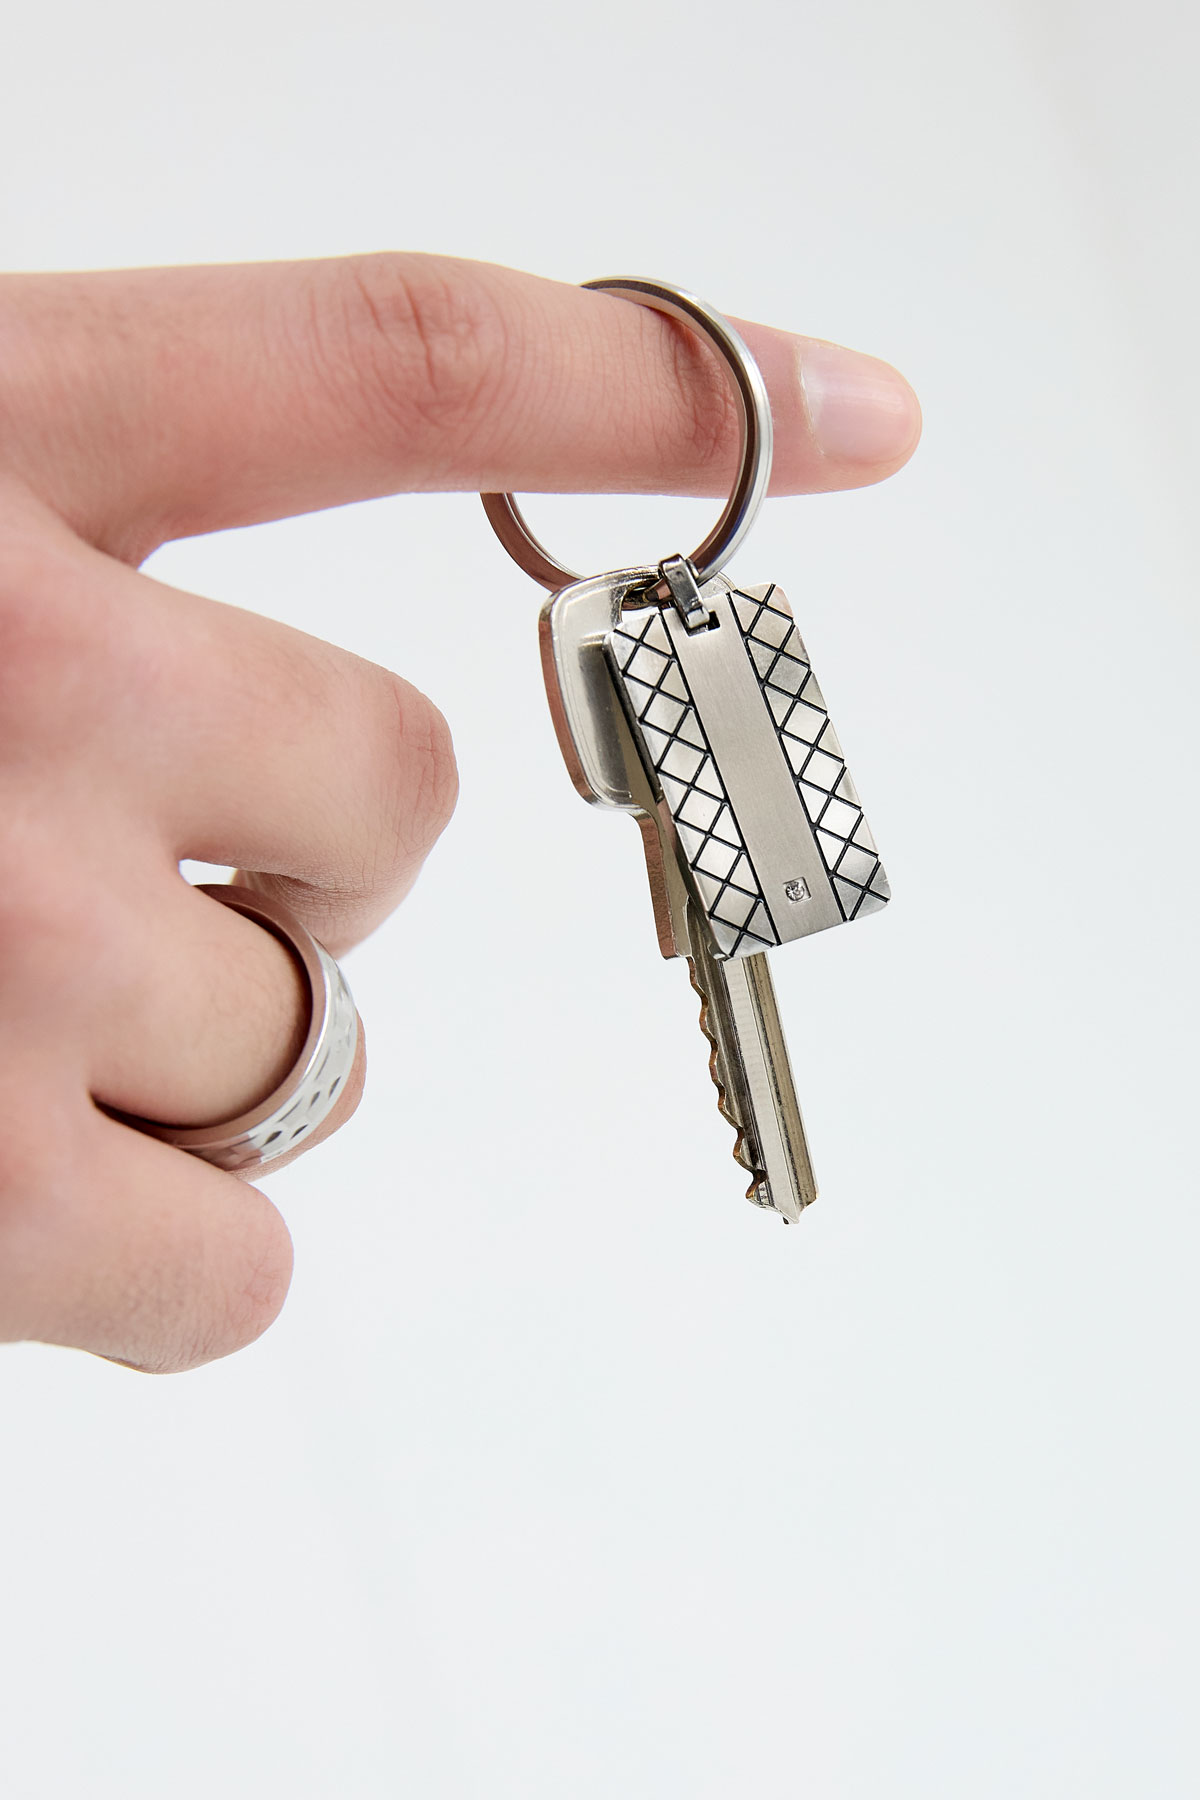 Porte-clés avec breloque motif - argenté Image3